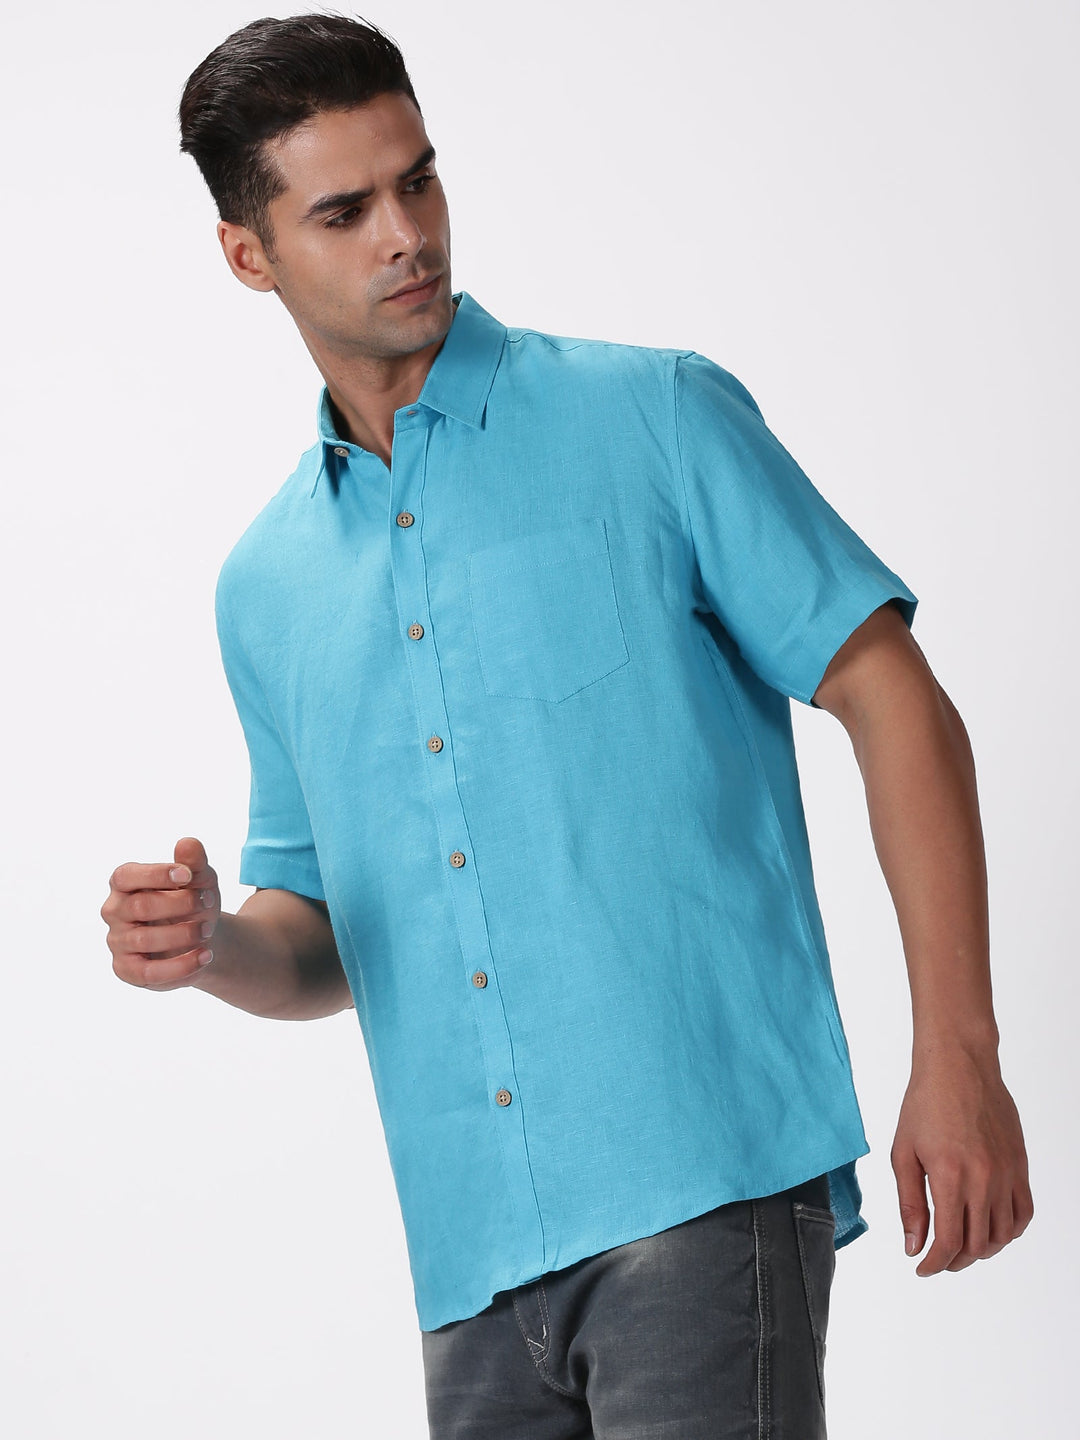 Kian - Pure Linen Regular Collar Half Sleeve Shirt - Aqua Blue | Rescue